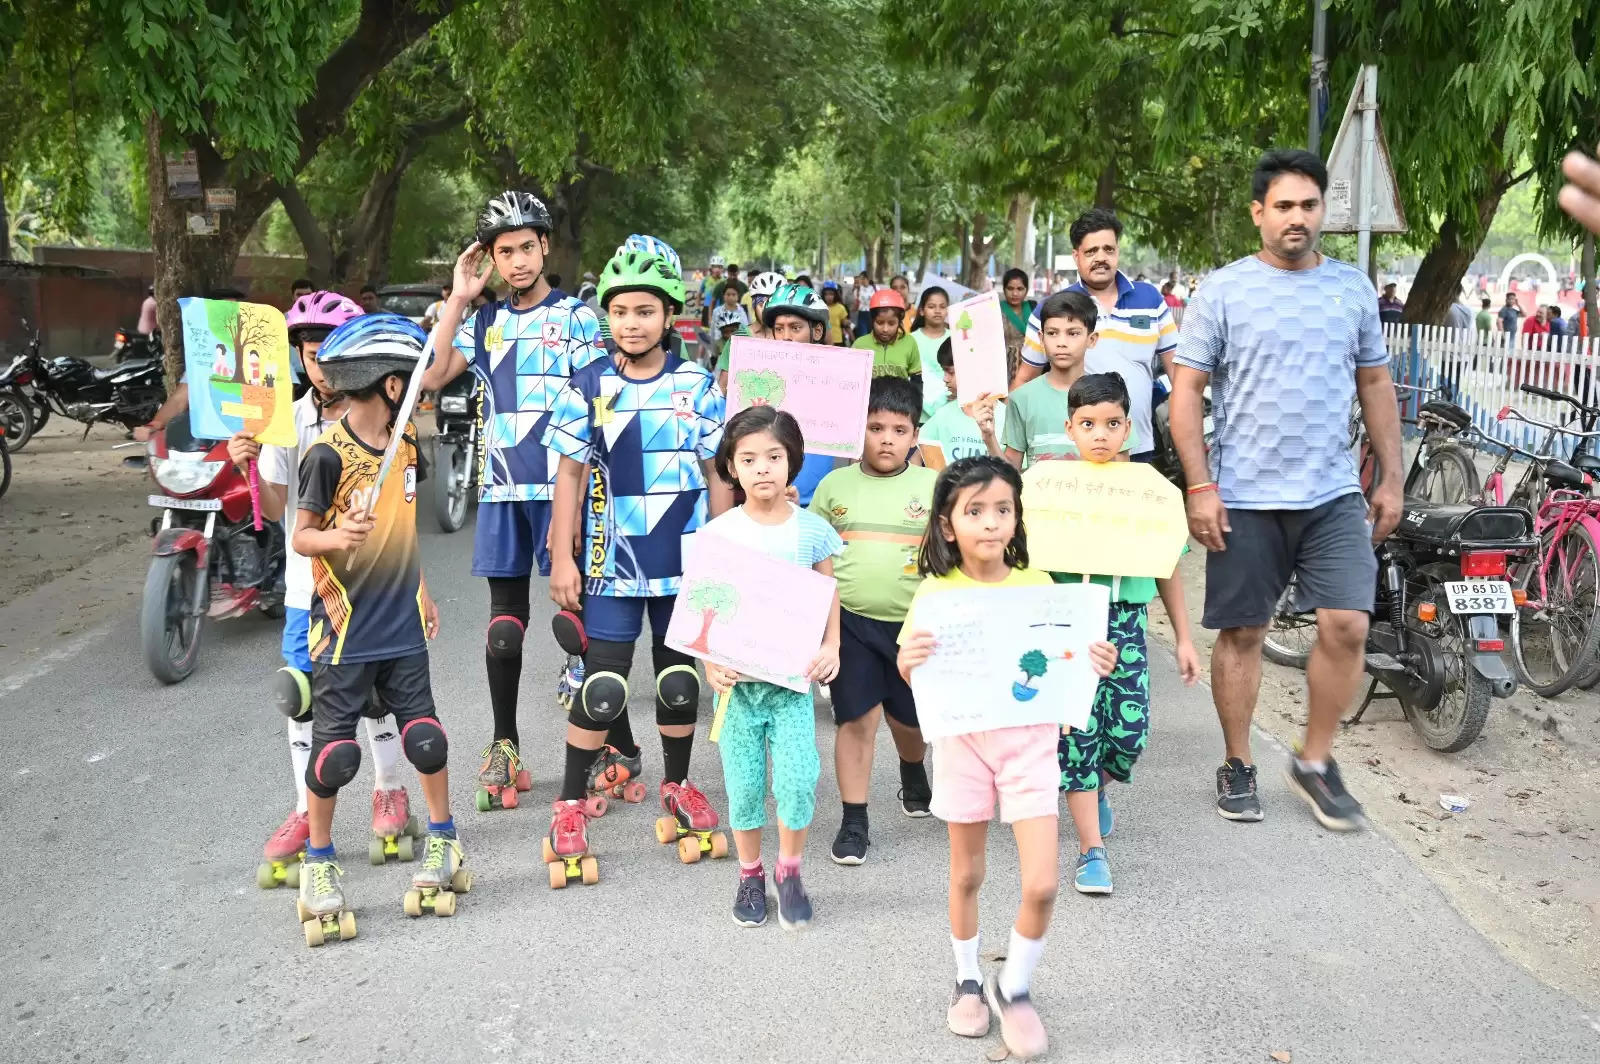 Varanasi News: विश्व पर्यावरण दिवस पर रोलर स्केटिंग रैली का आयोजन